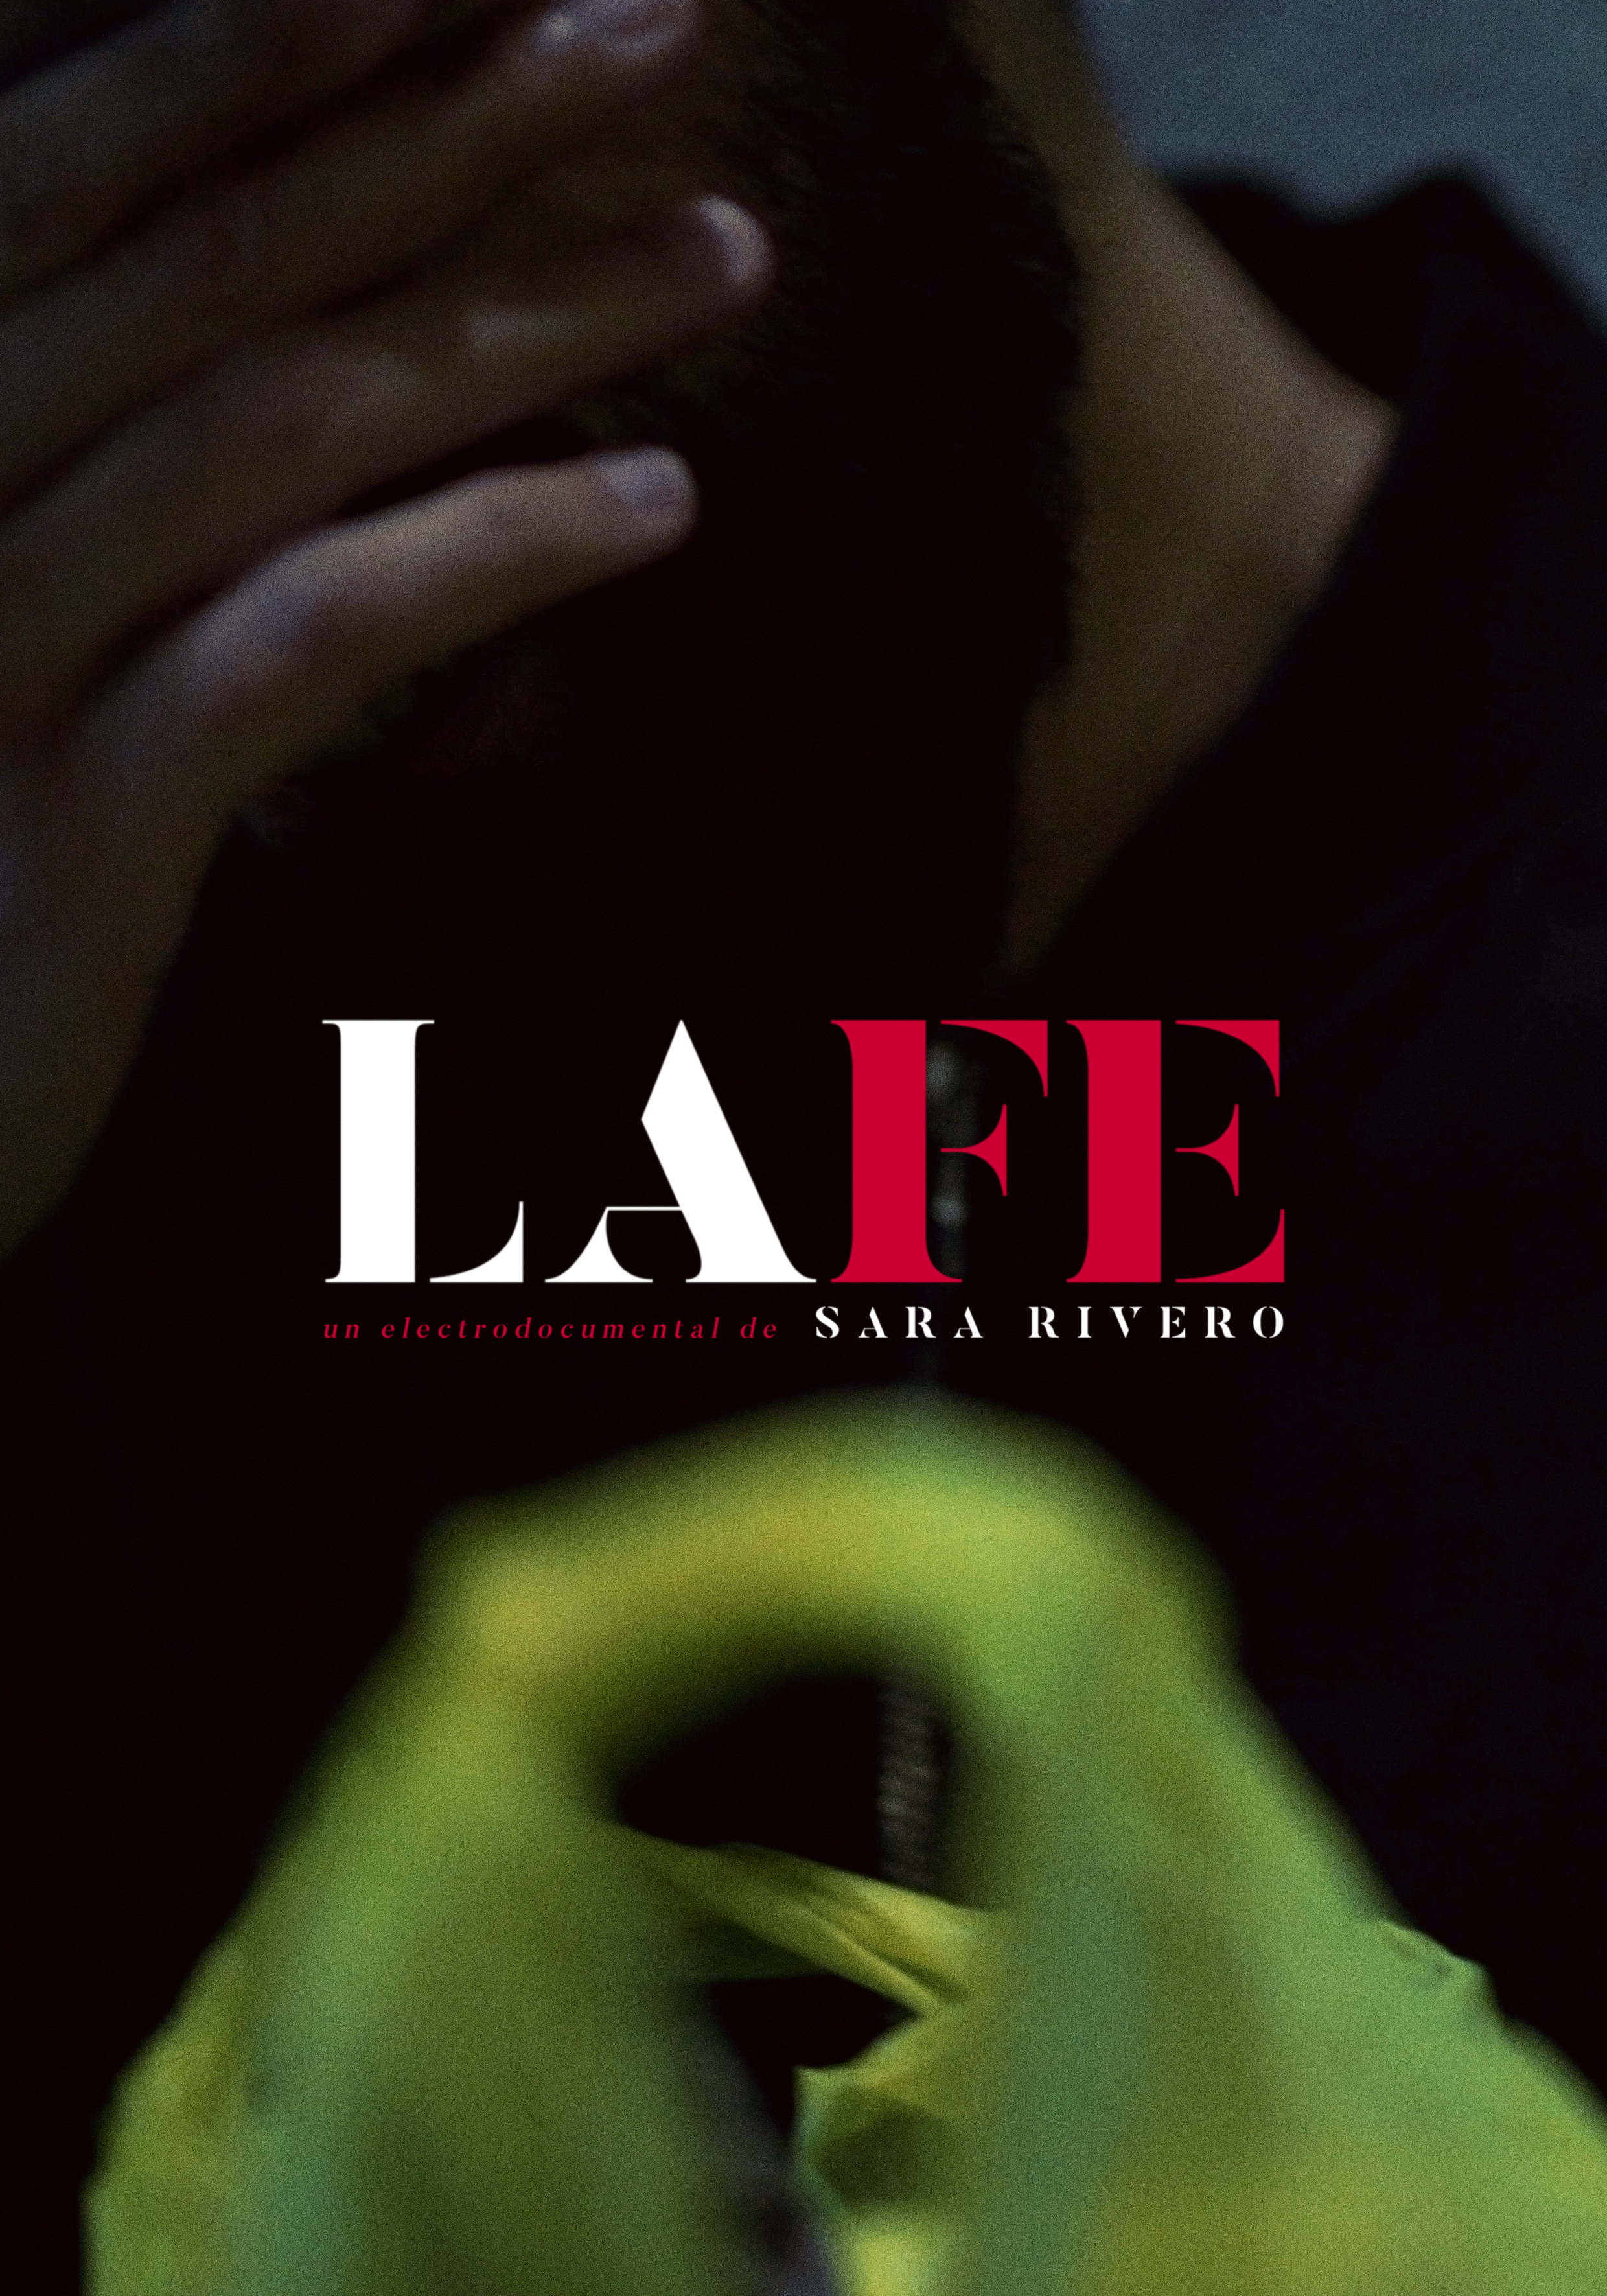 La fe  (faith) - Sara Rivero